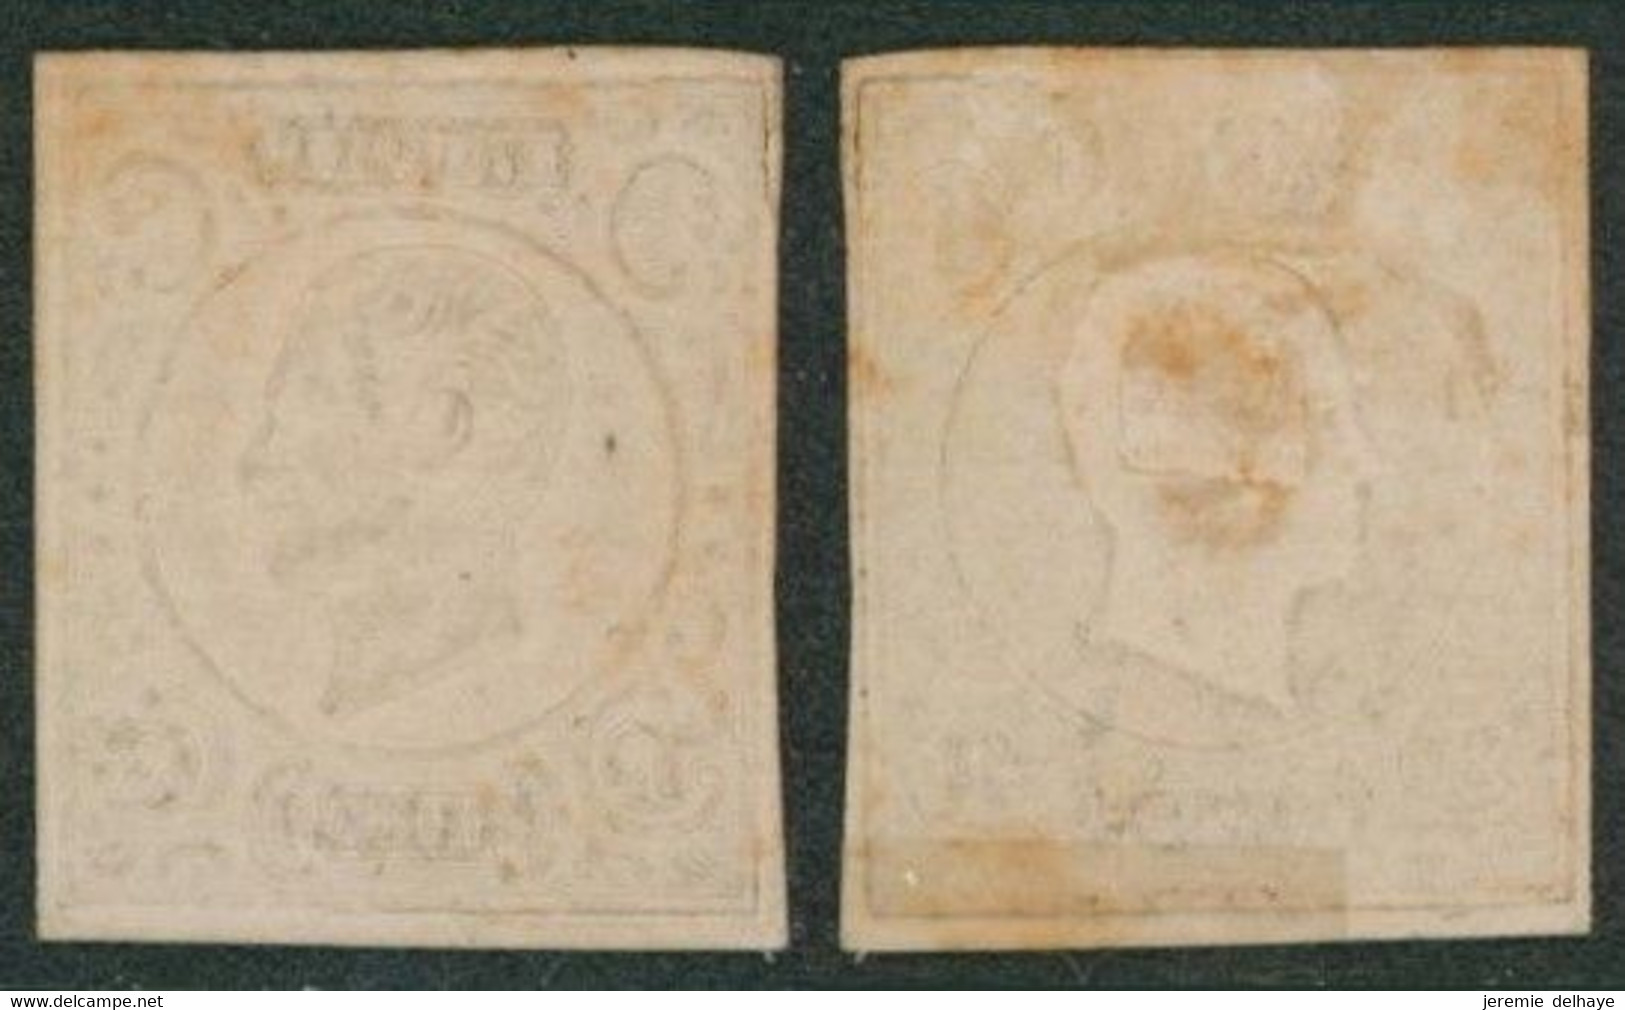 Essai - Proposition De J. Delpierre (Coin Comple) Type Profil Gauche 20C Blanc En Relief Sur Papier Vergé épais STES0843 - Proeven & Herdruk